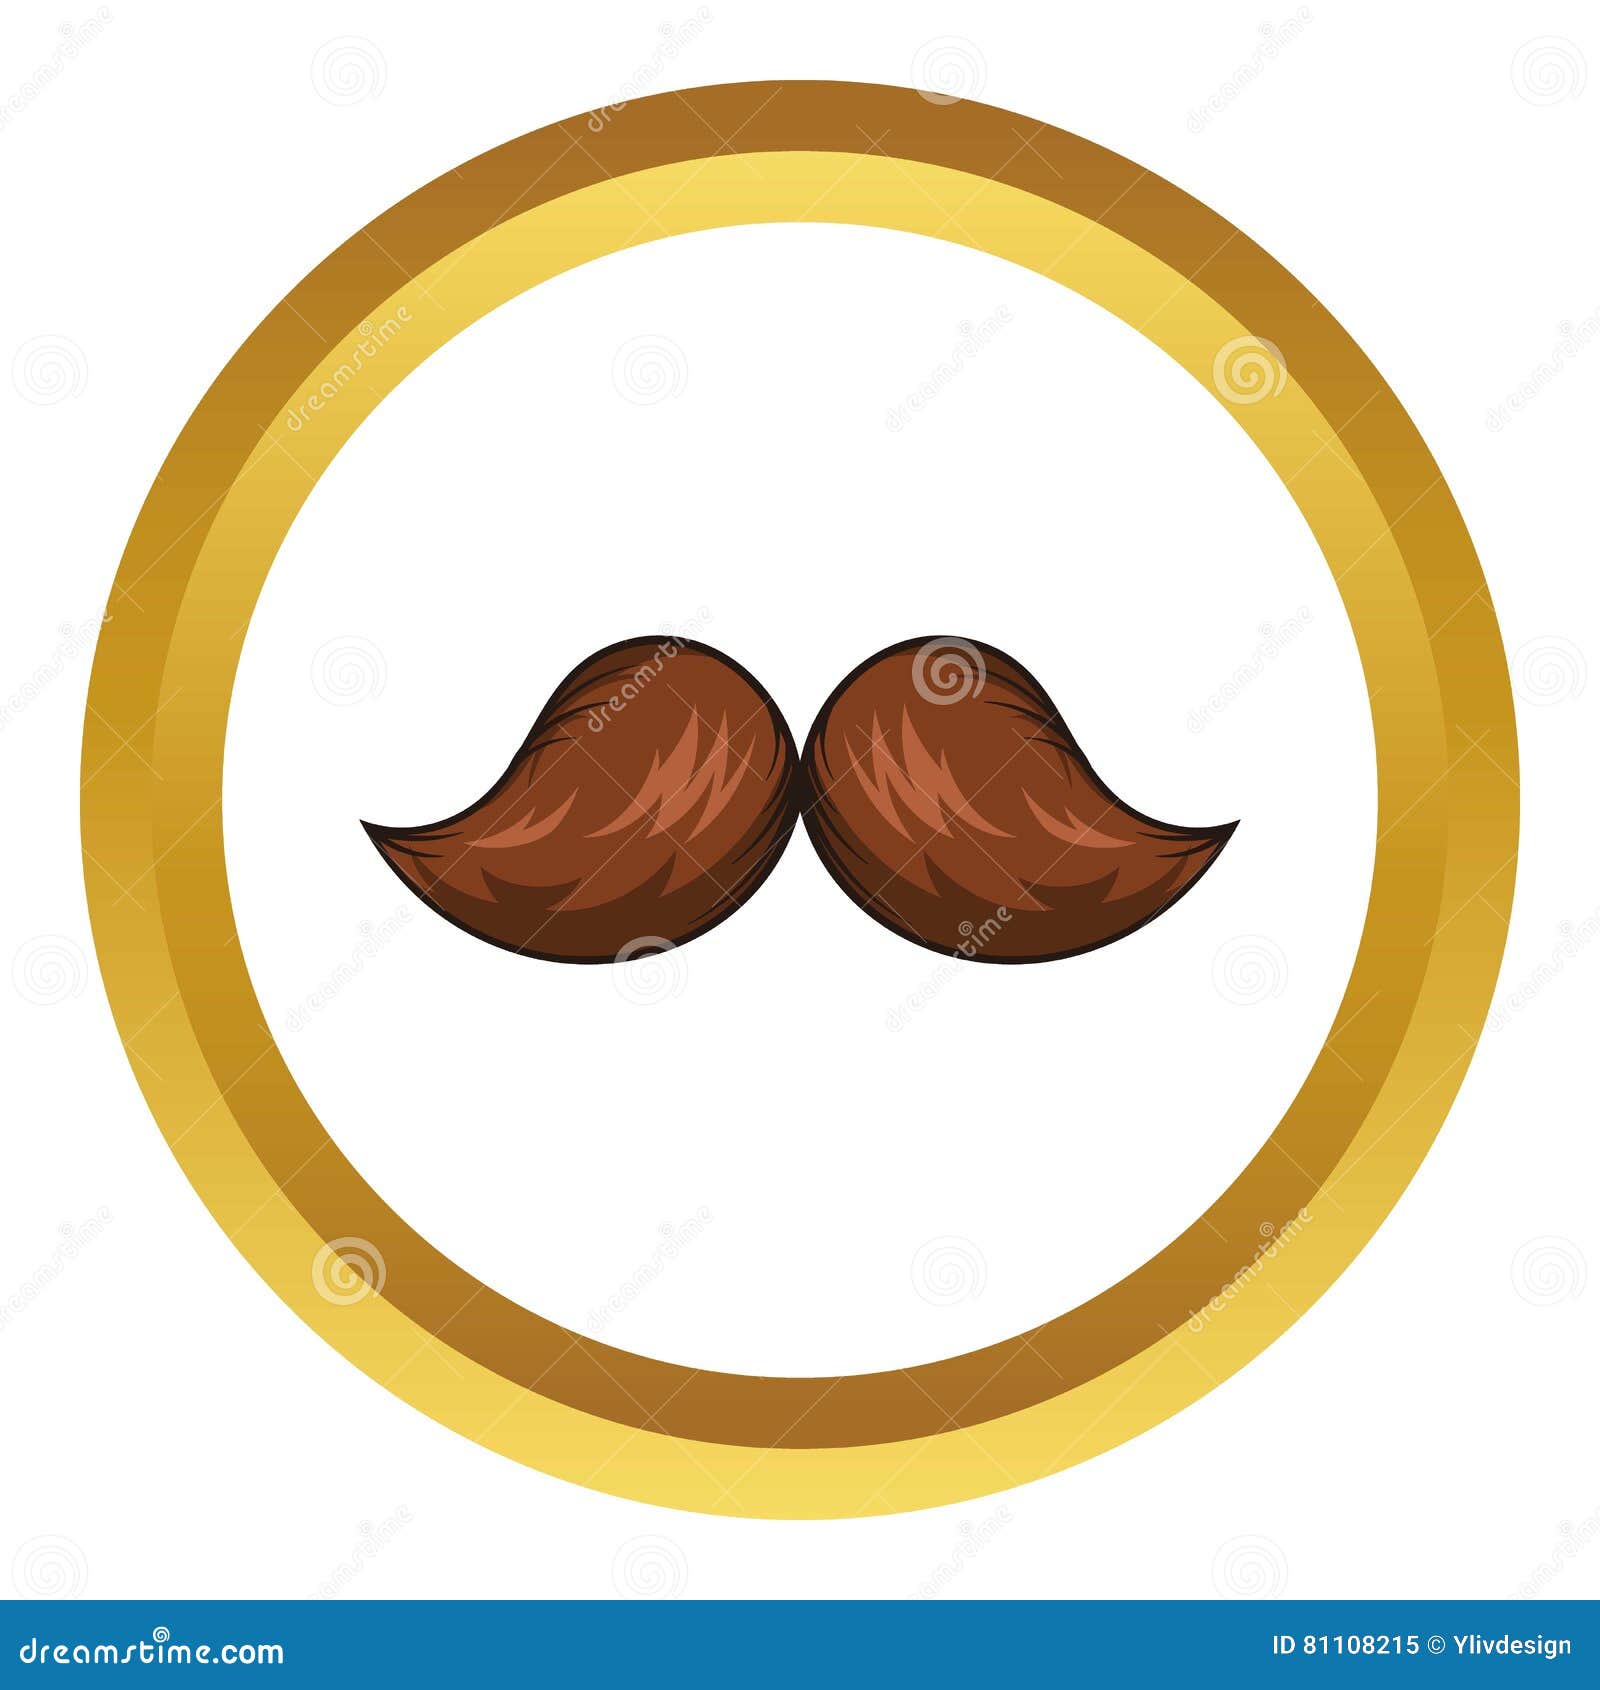 Retro Hipster Mustache Vector Icon, Cartoon Style Stock Vector ...